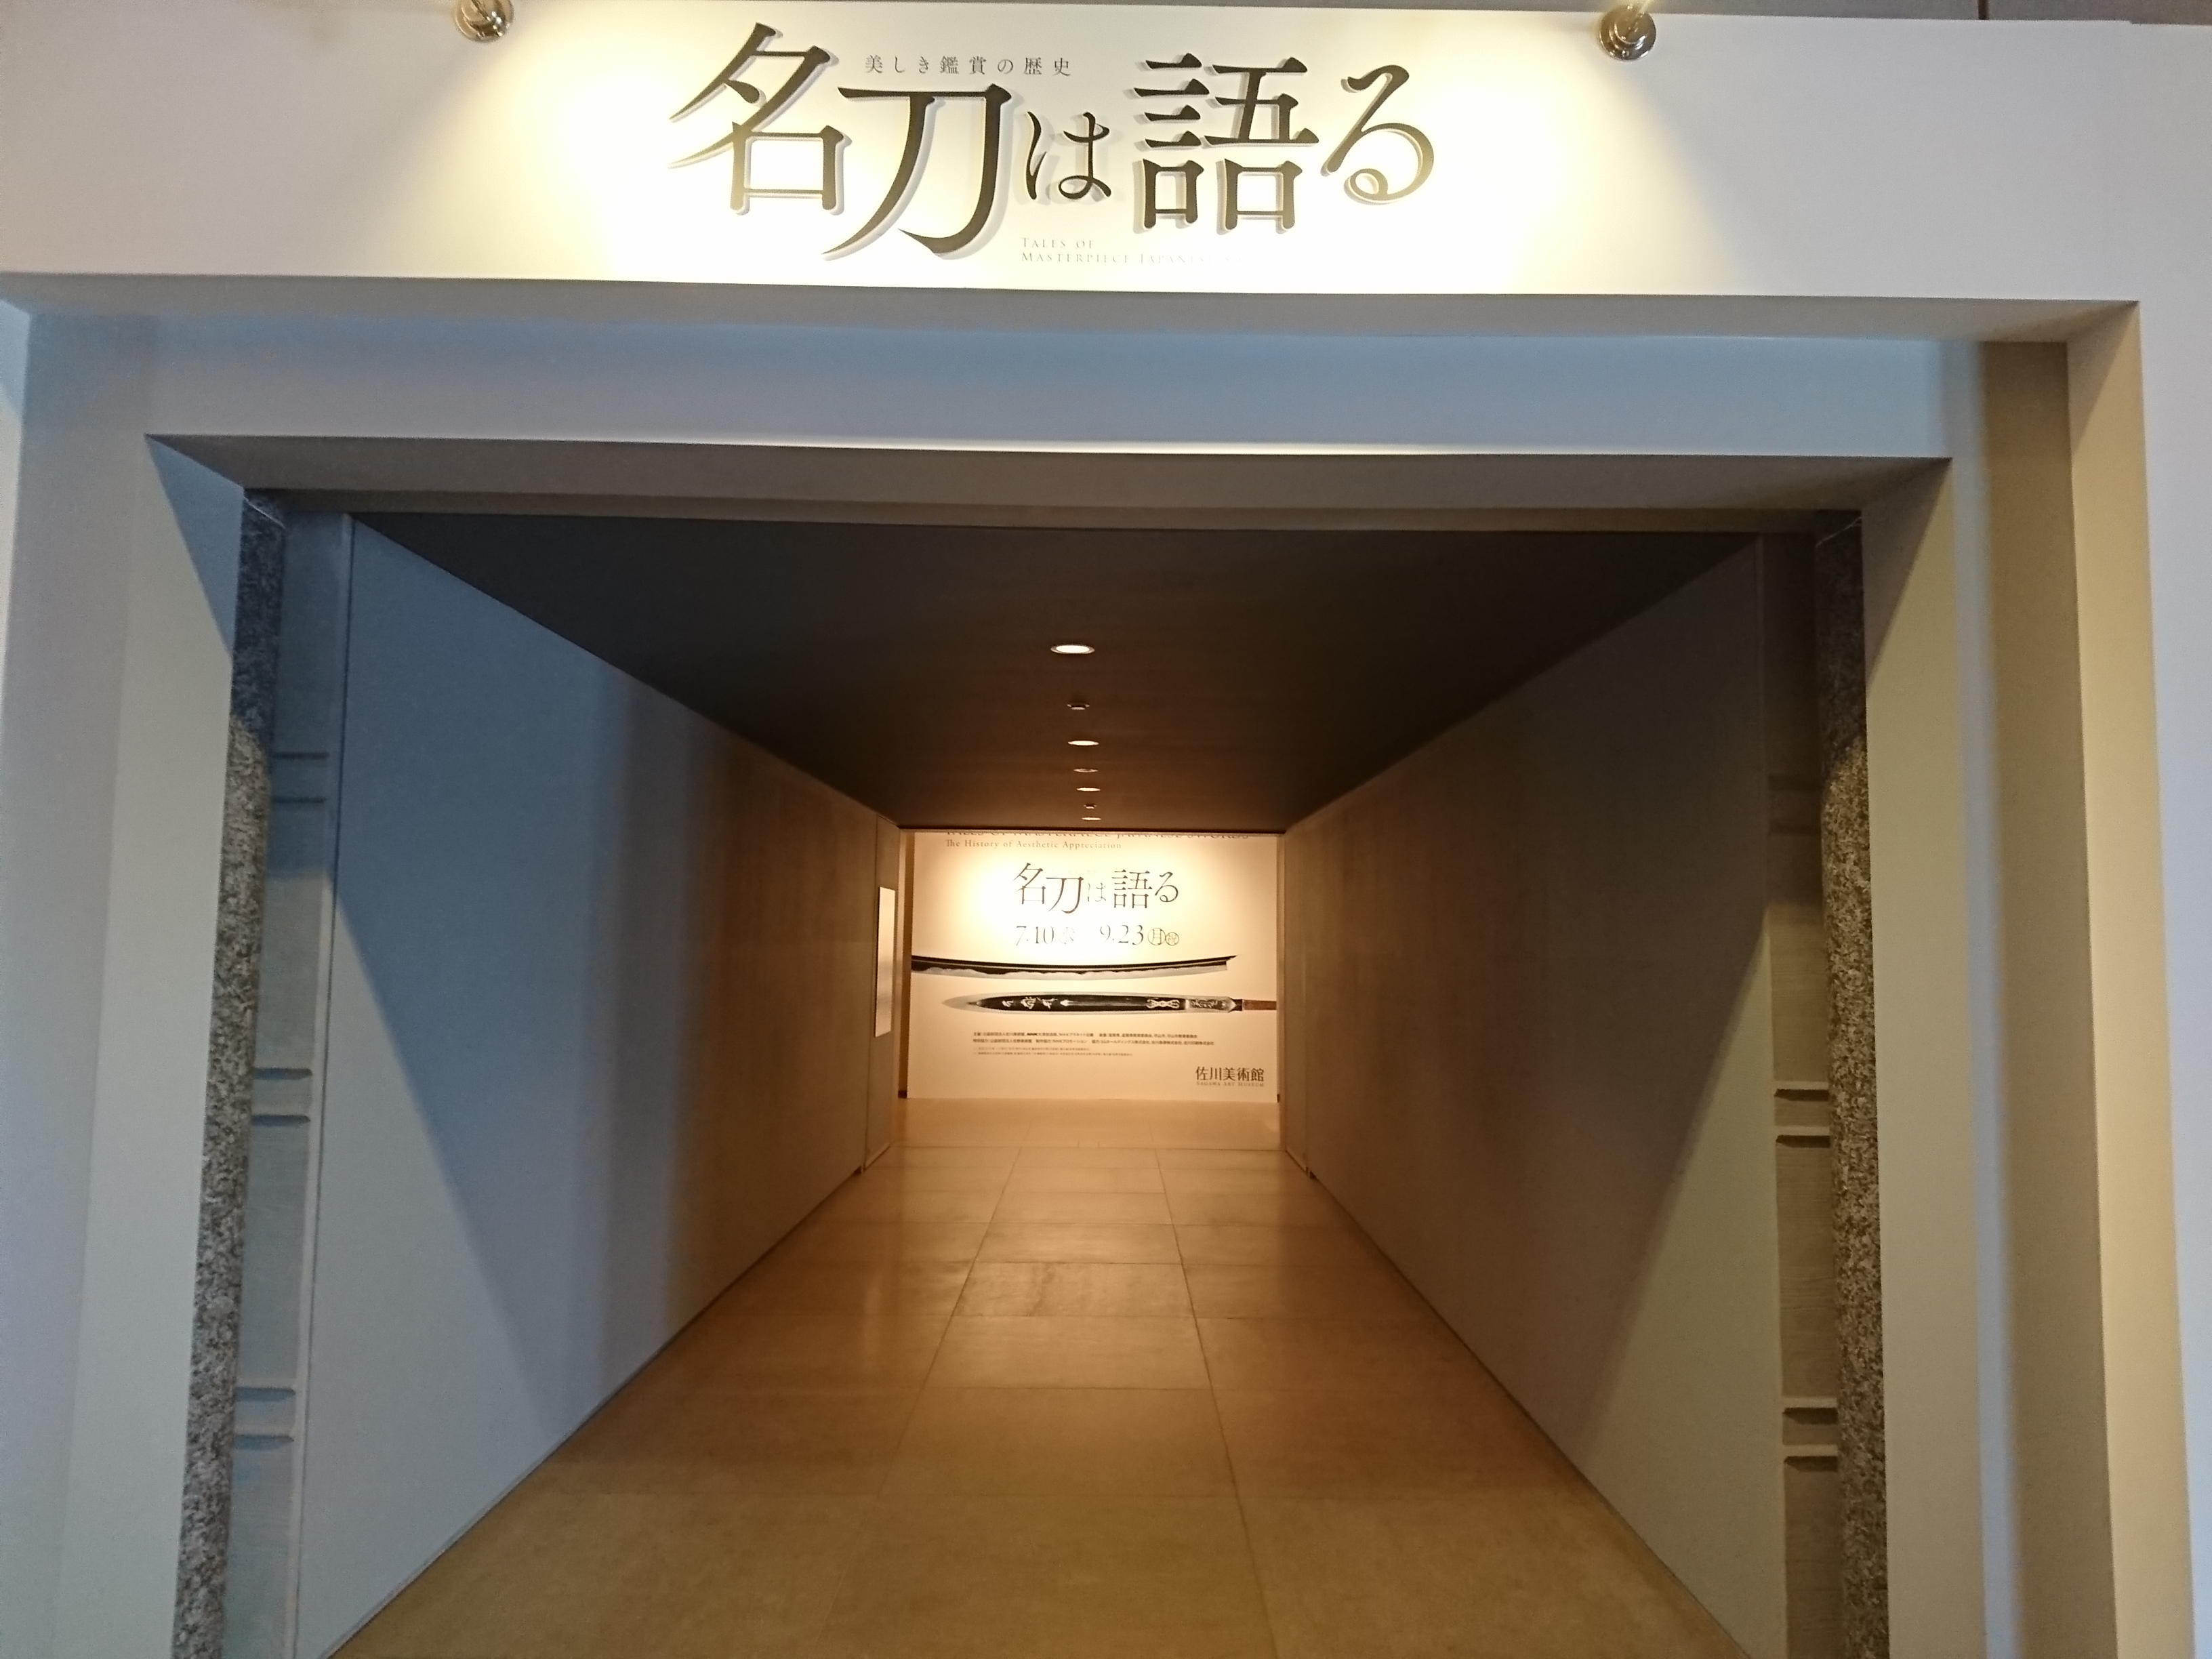 佐川美術館「名刀は語る～美しき鑑賞の世界～」に行ってきました〈9月23日まで開催〉。守山市民は7月26日は無料で入館できますよ♪